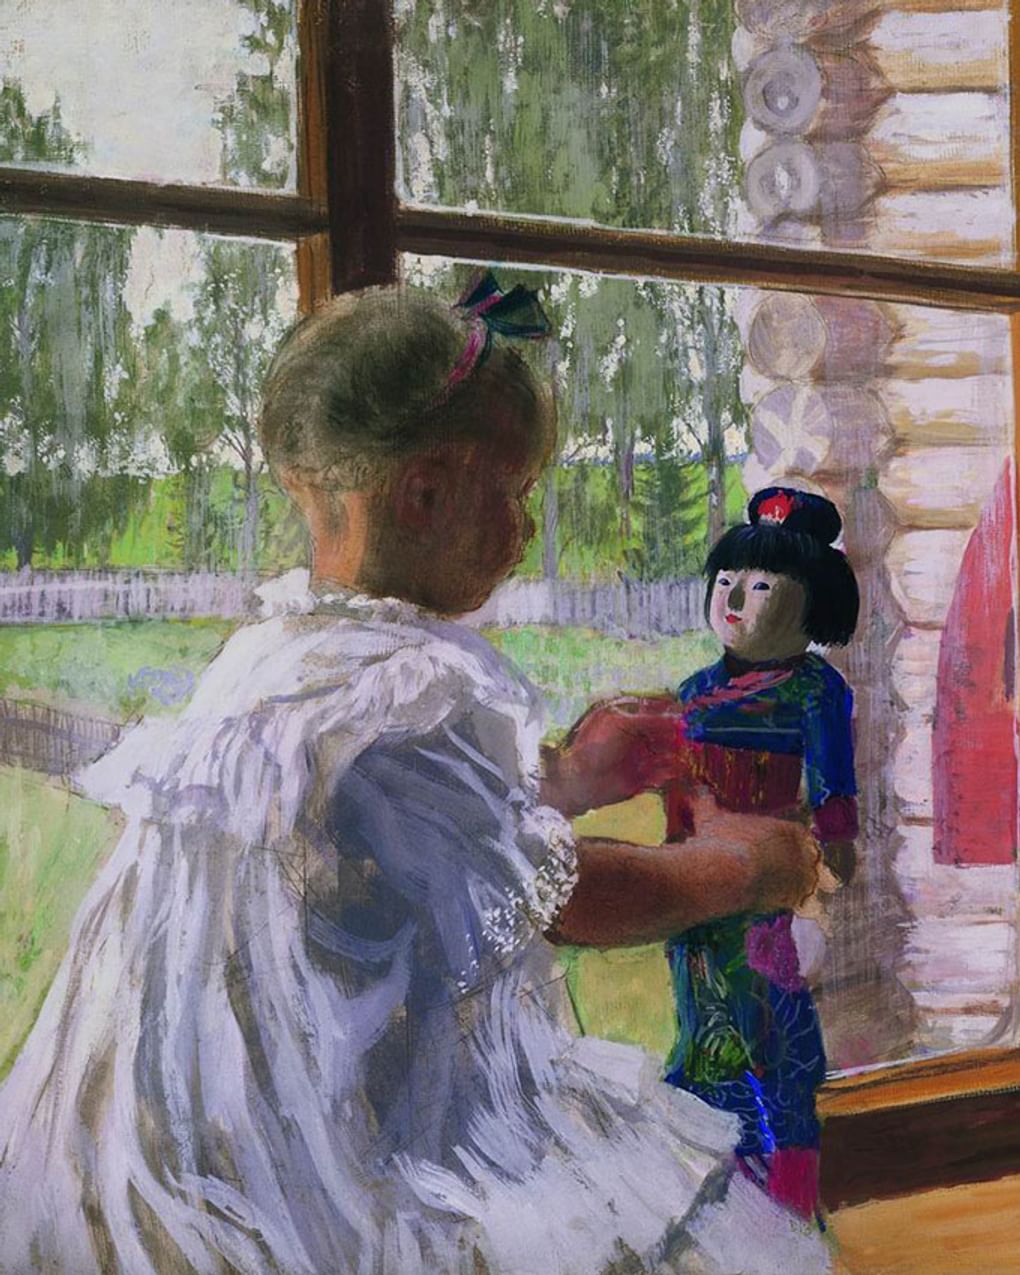 Борис Кустодиев. Японская кукла (фрагмент). 1908. Государственная Третьяковская галерея, Москва